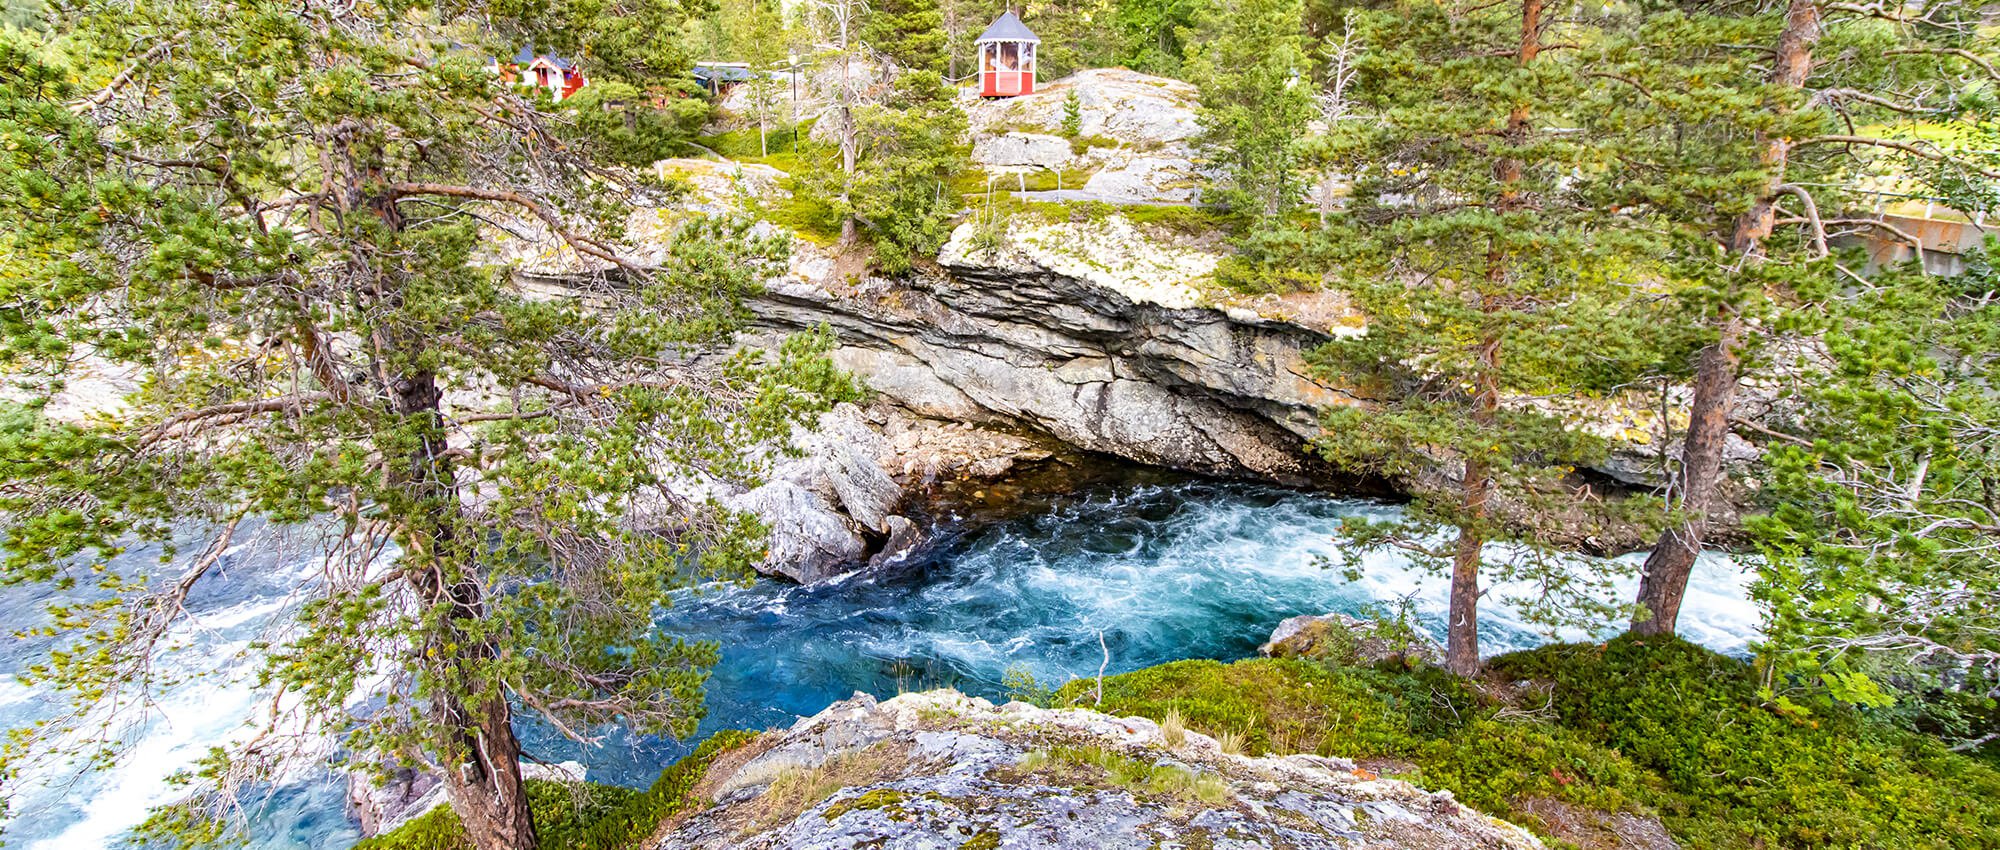 Workation in Norwegen, der Fluss Rauma mit seinem türkisfarbenem Wasser